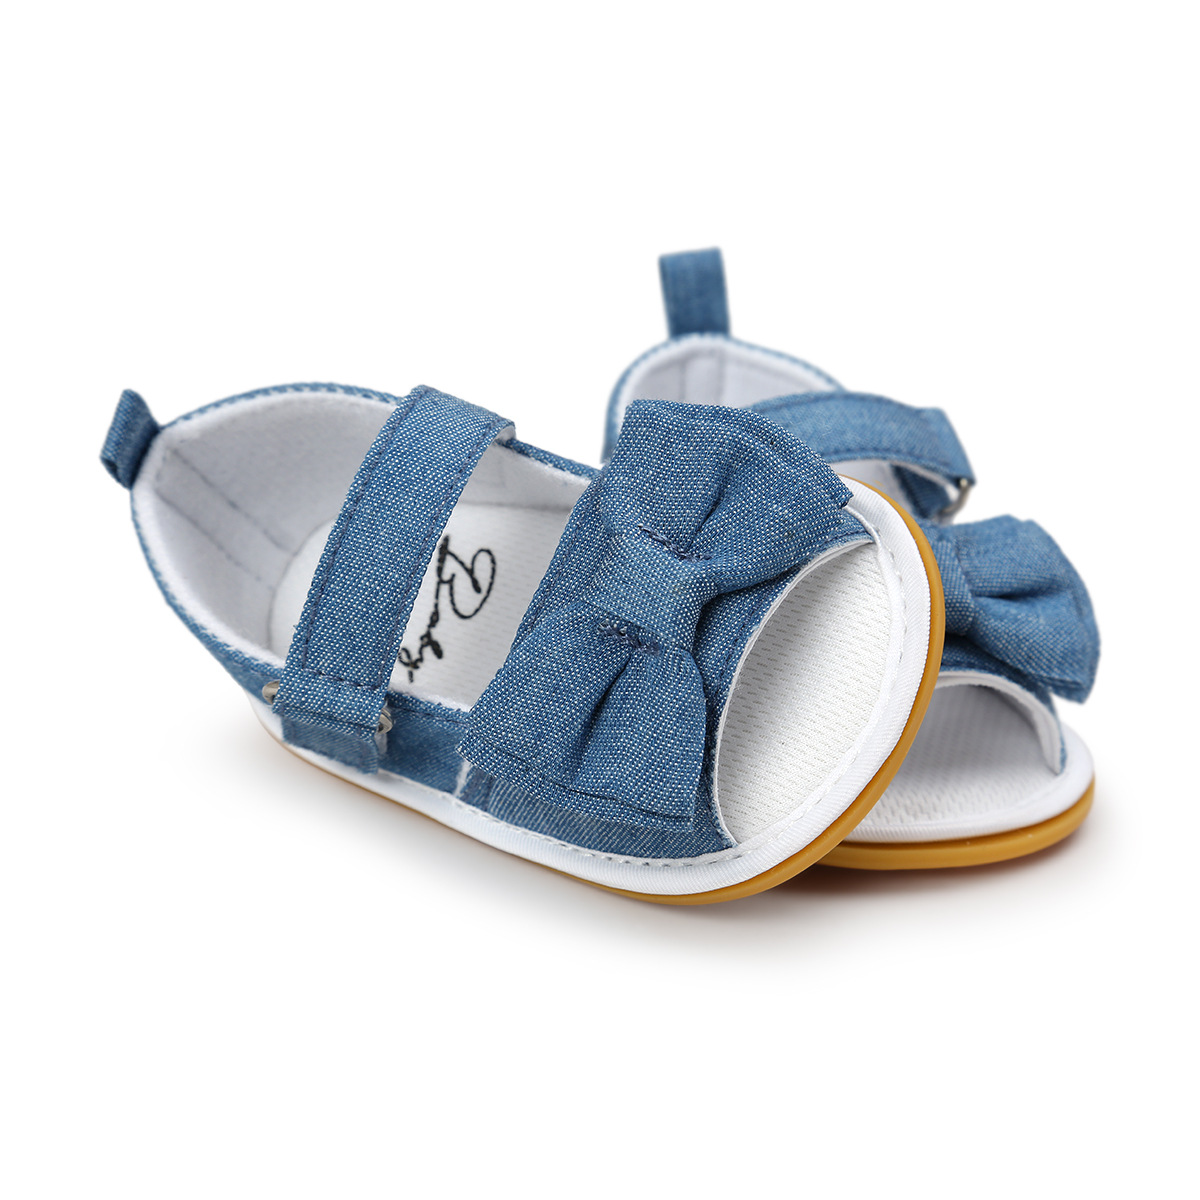 Chaussures bébé en coton - Ref 3436770 Image 49